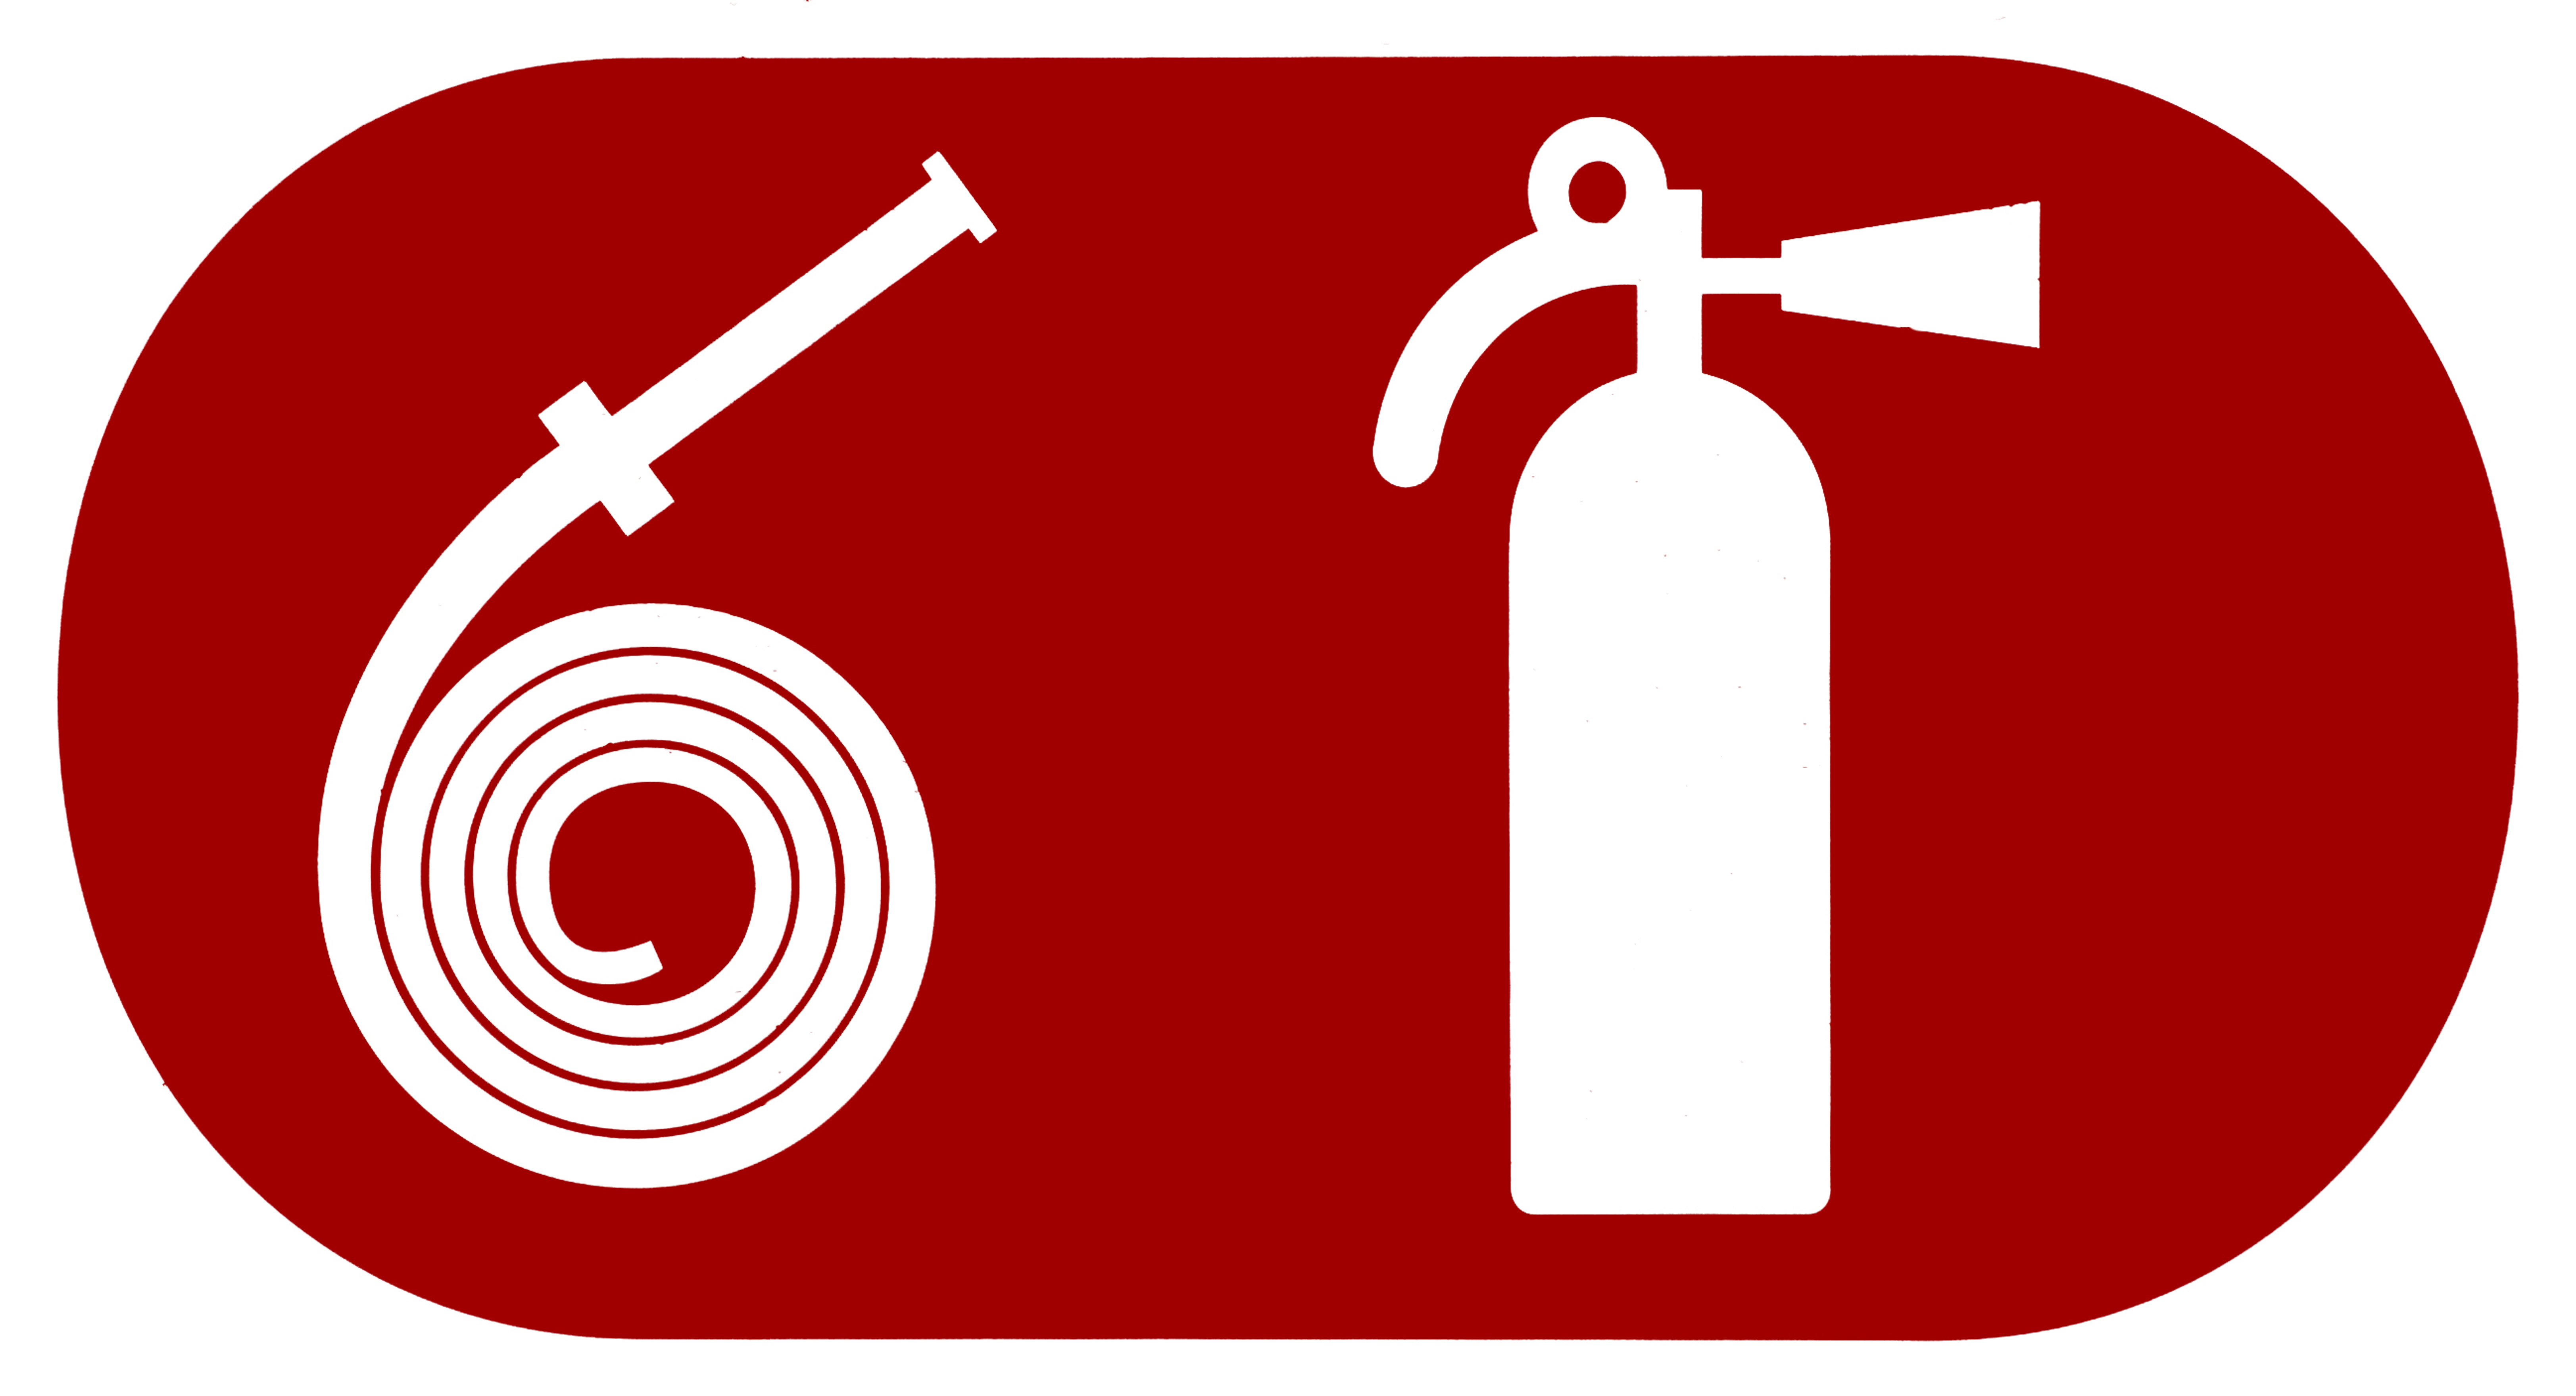 Pictogramas de uma mangueira e um extintor de incêndios brancos em um fundo vermelho